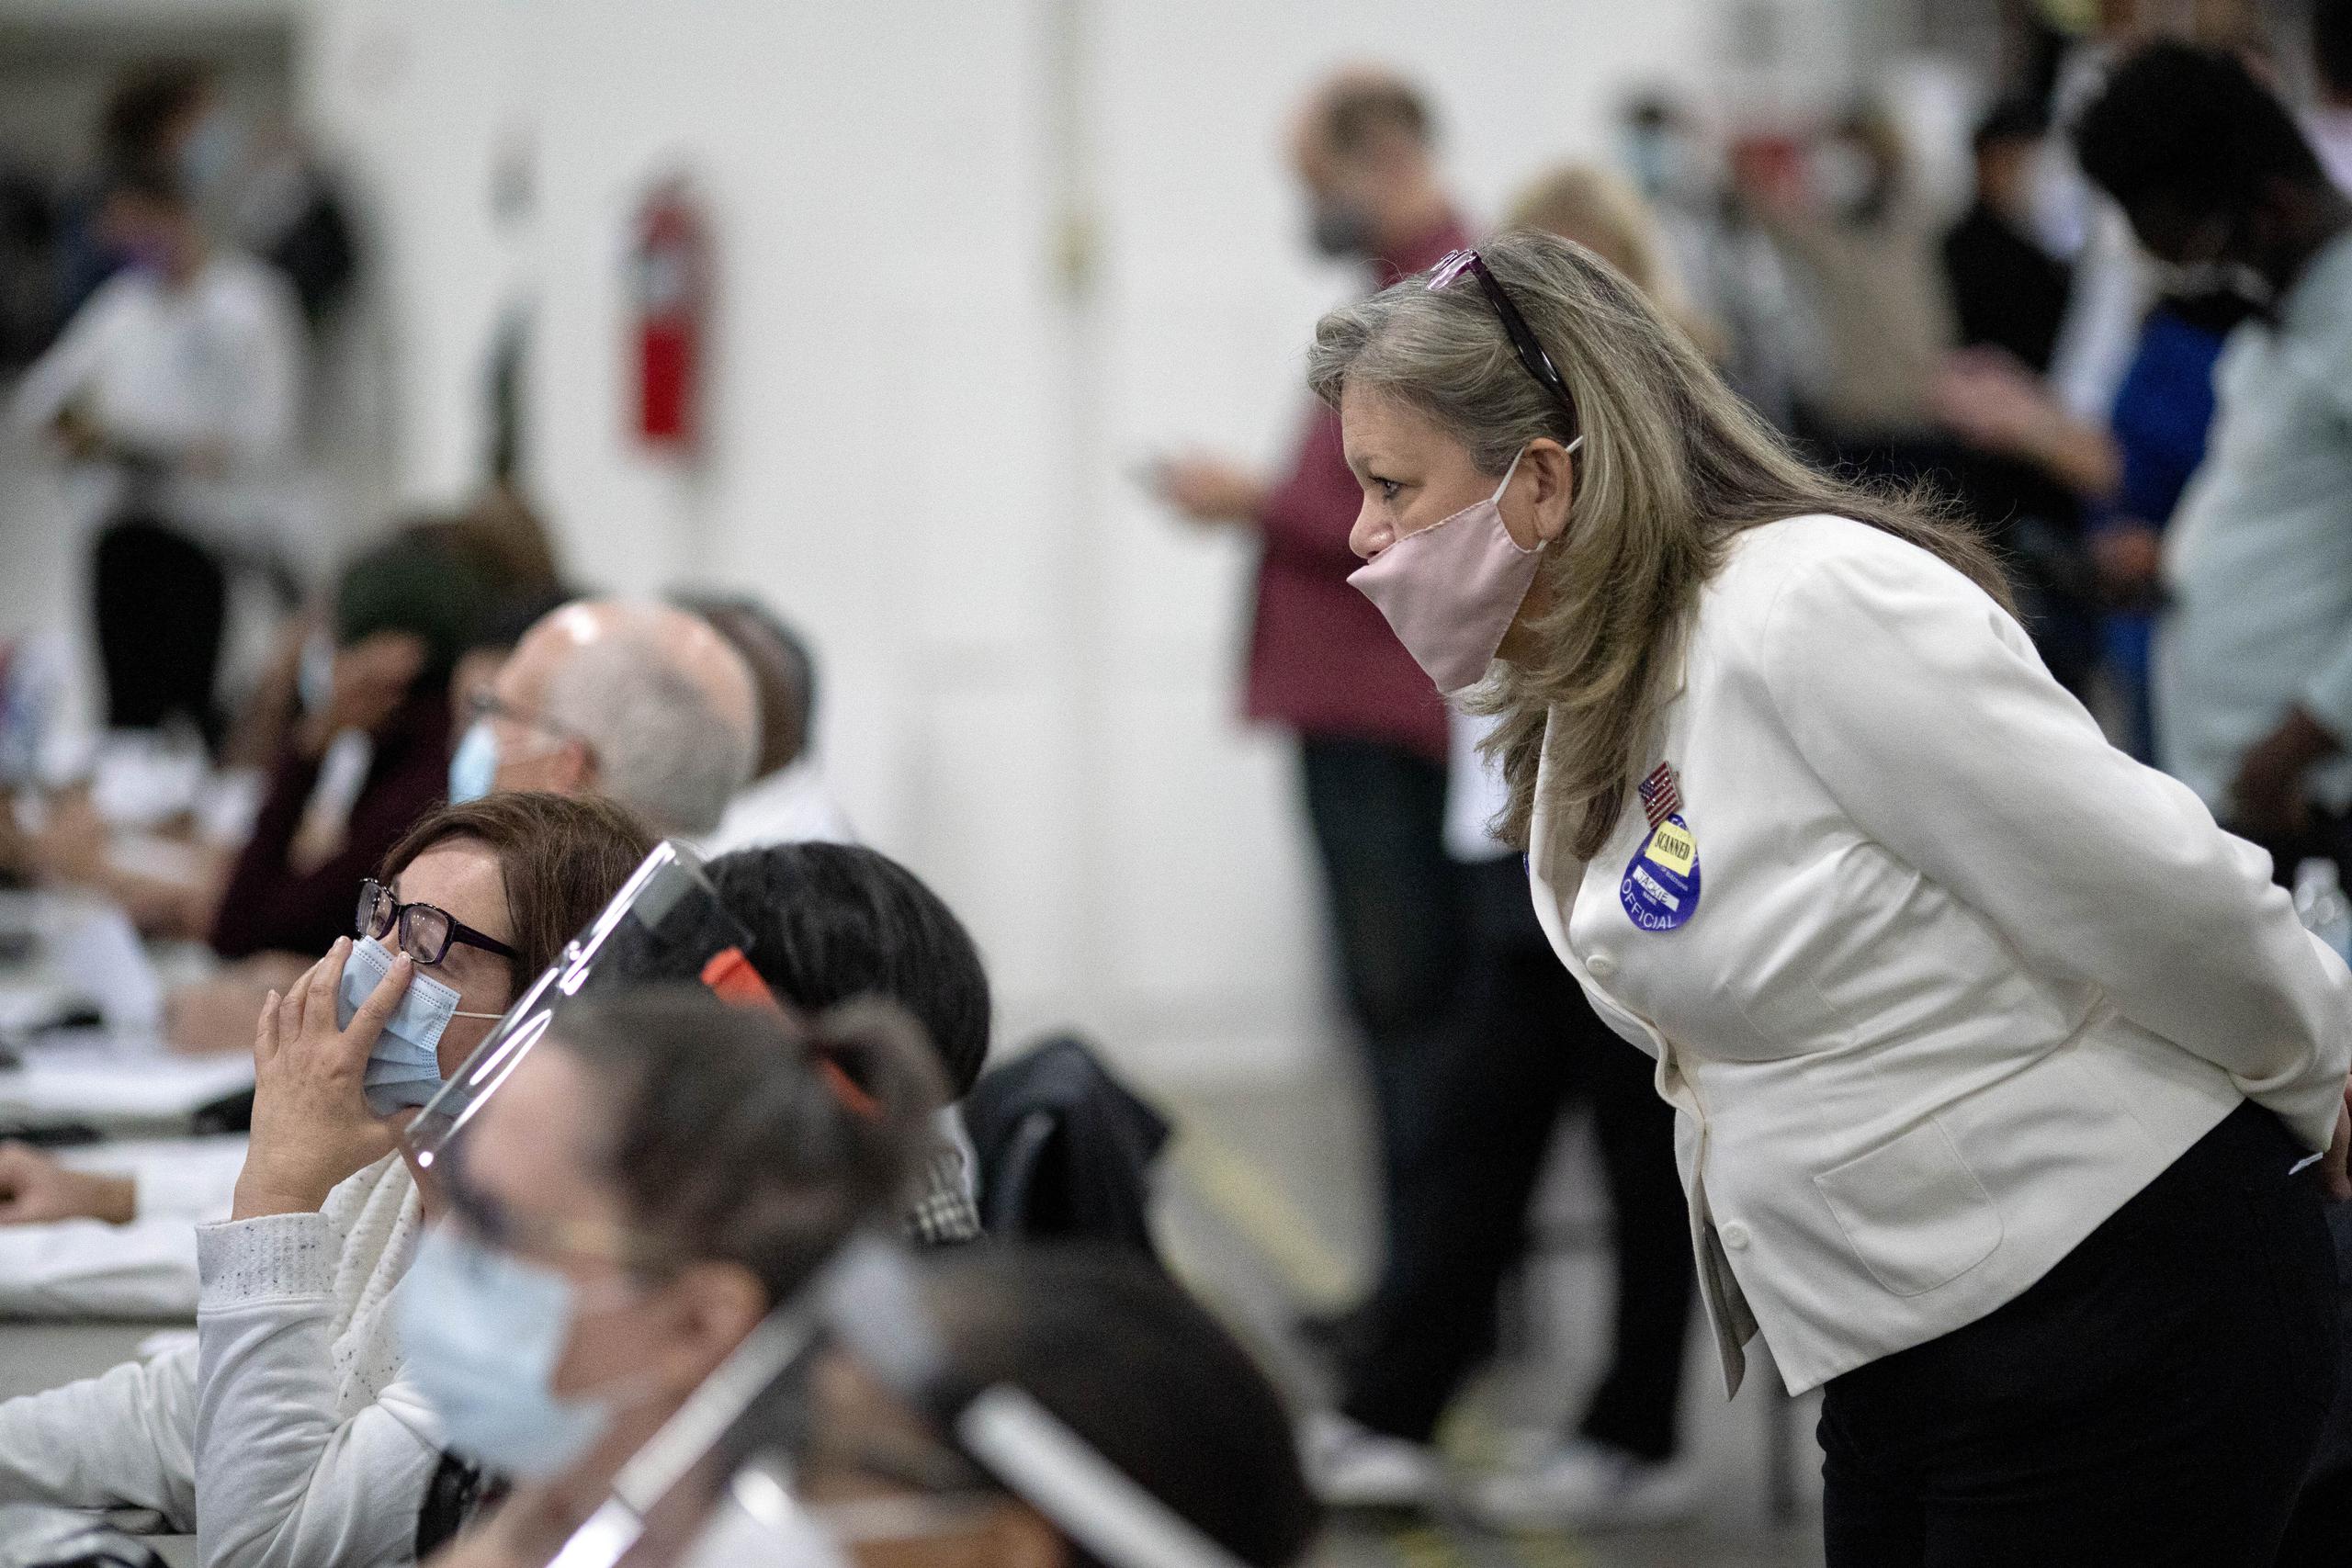 Una aspirante republicana a las elecciones (derecha) observa a los inspectores electorales mientras examinan una papeleta durante el conteo de votos en la junta central de recuento de Detroit.